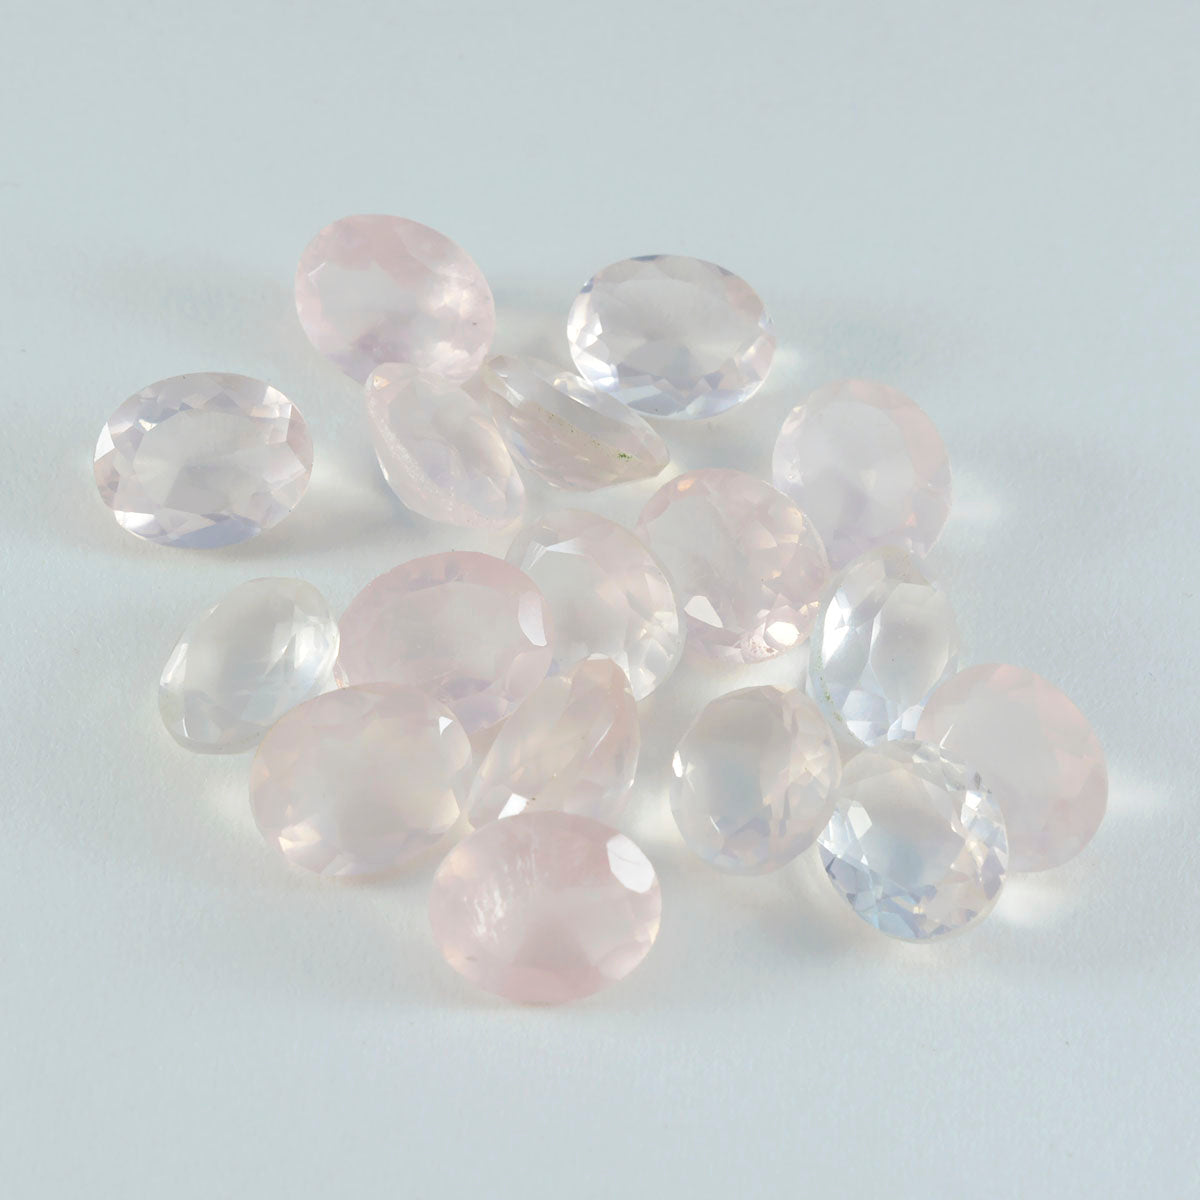 riyogems 1шт розовый кварц ограненный 8x10 мм овальной формы прекрасный качественный драгоценный камень